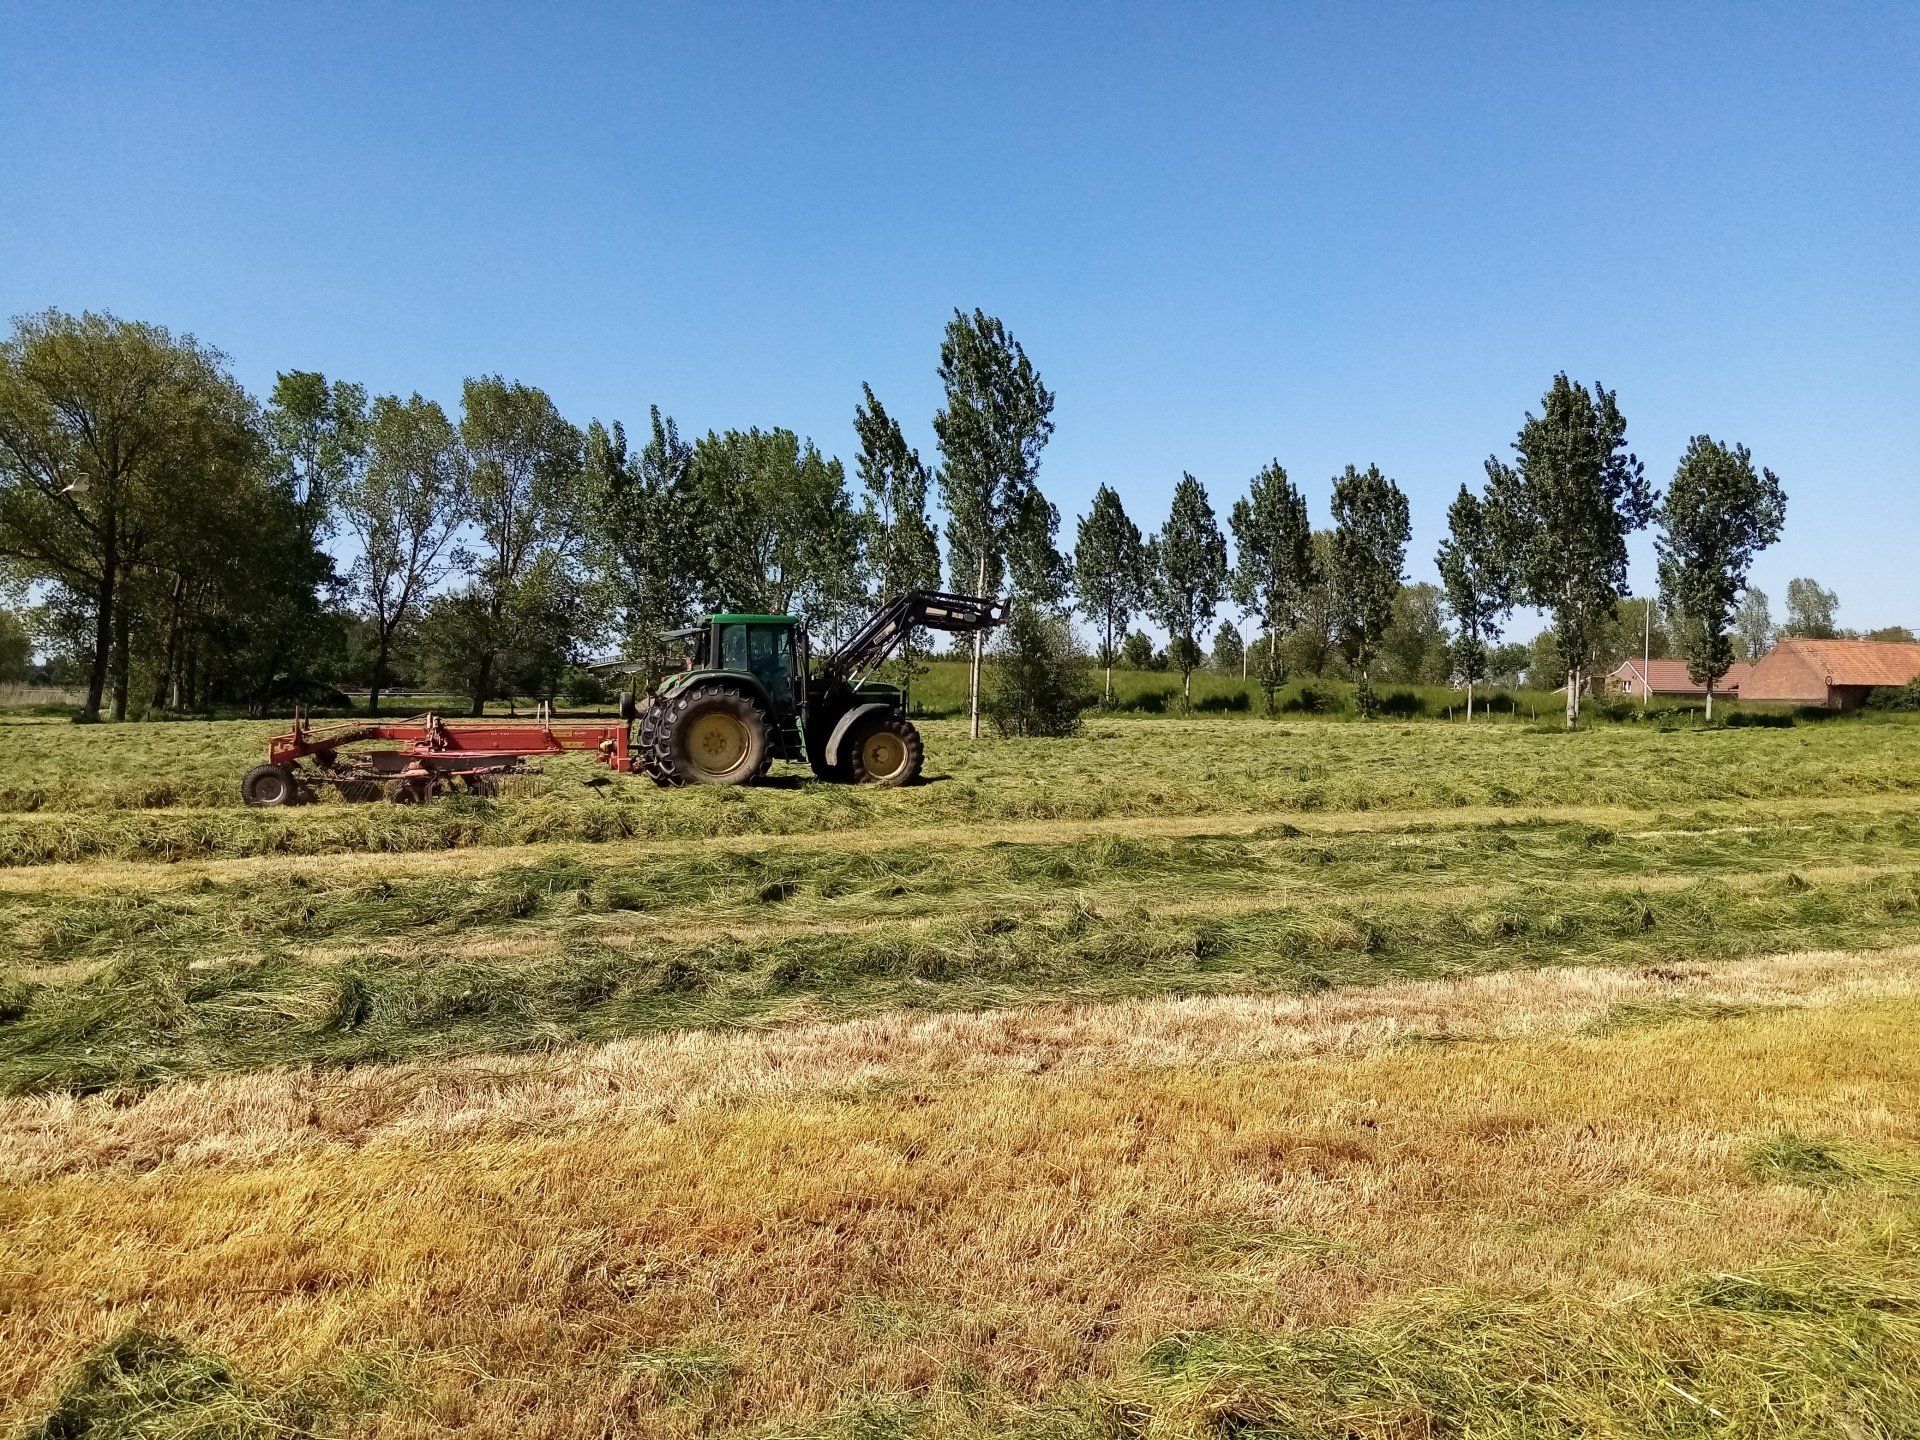 gras harken met een groene tractor van John Deere